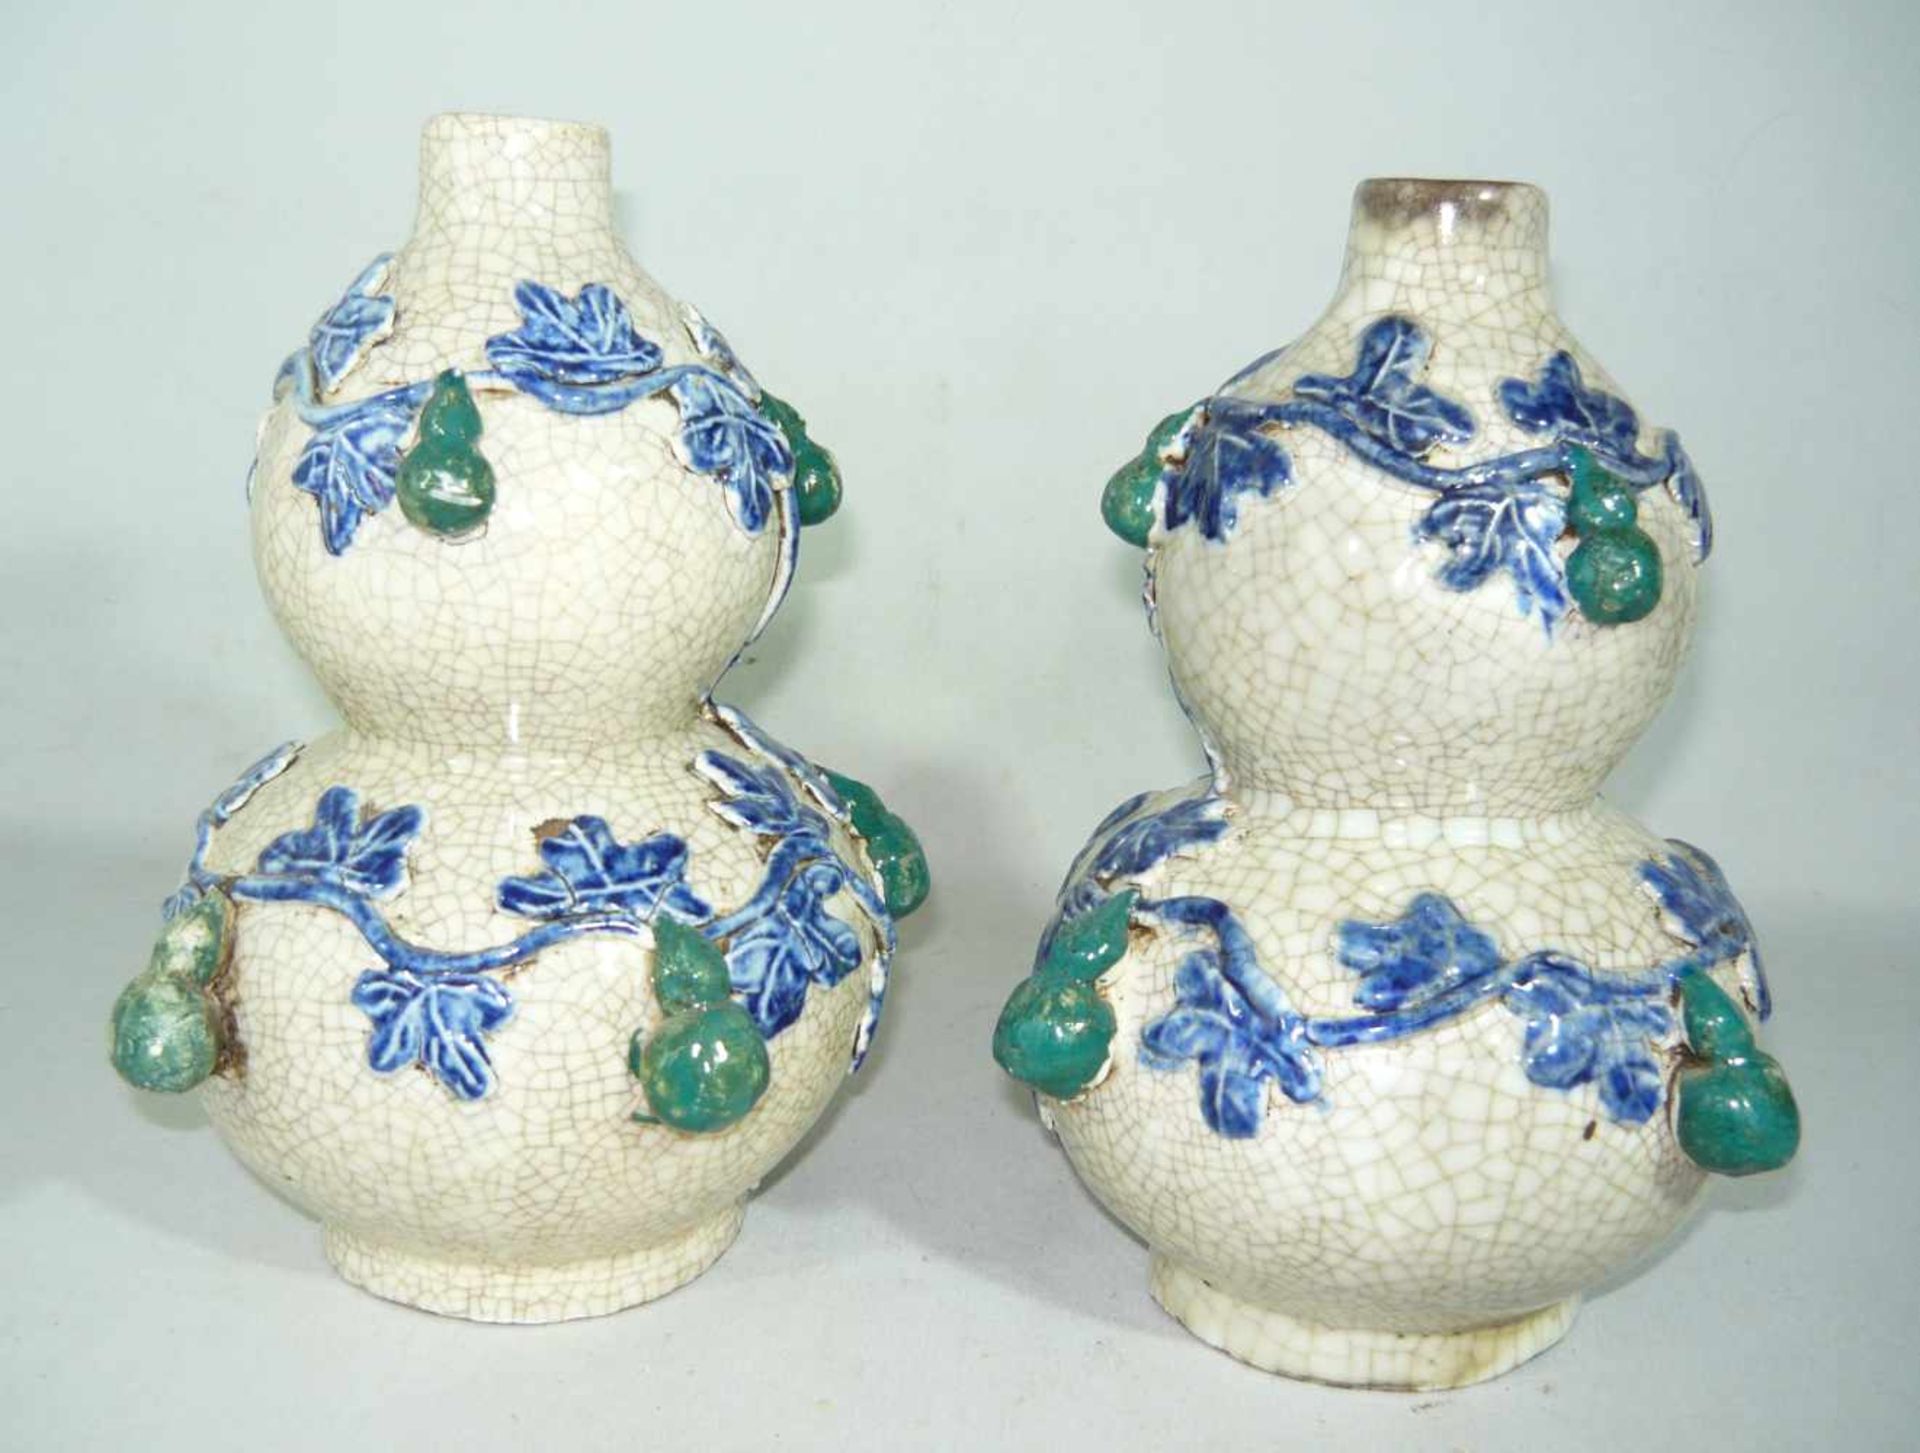 Paar Vasen in Kalebassen Form mit umlaufenden Blättern u. Früchteranken. Krakeleeglasur. China, wohl